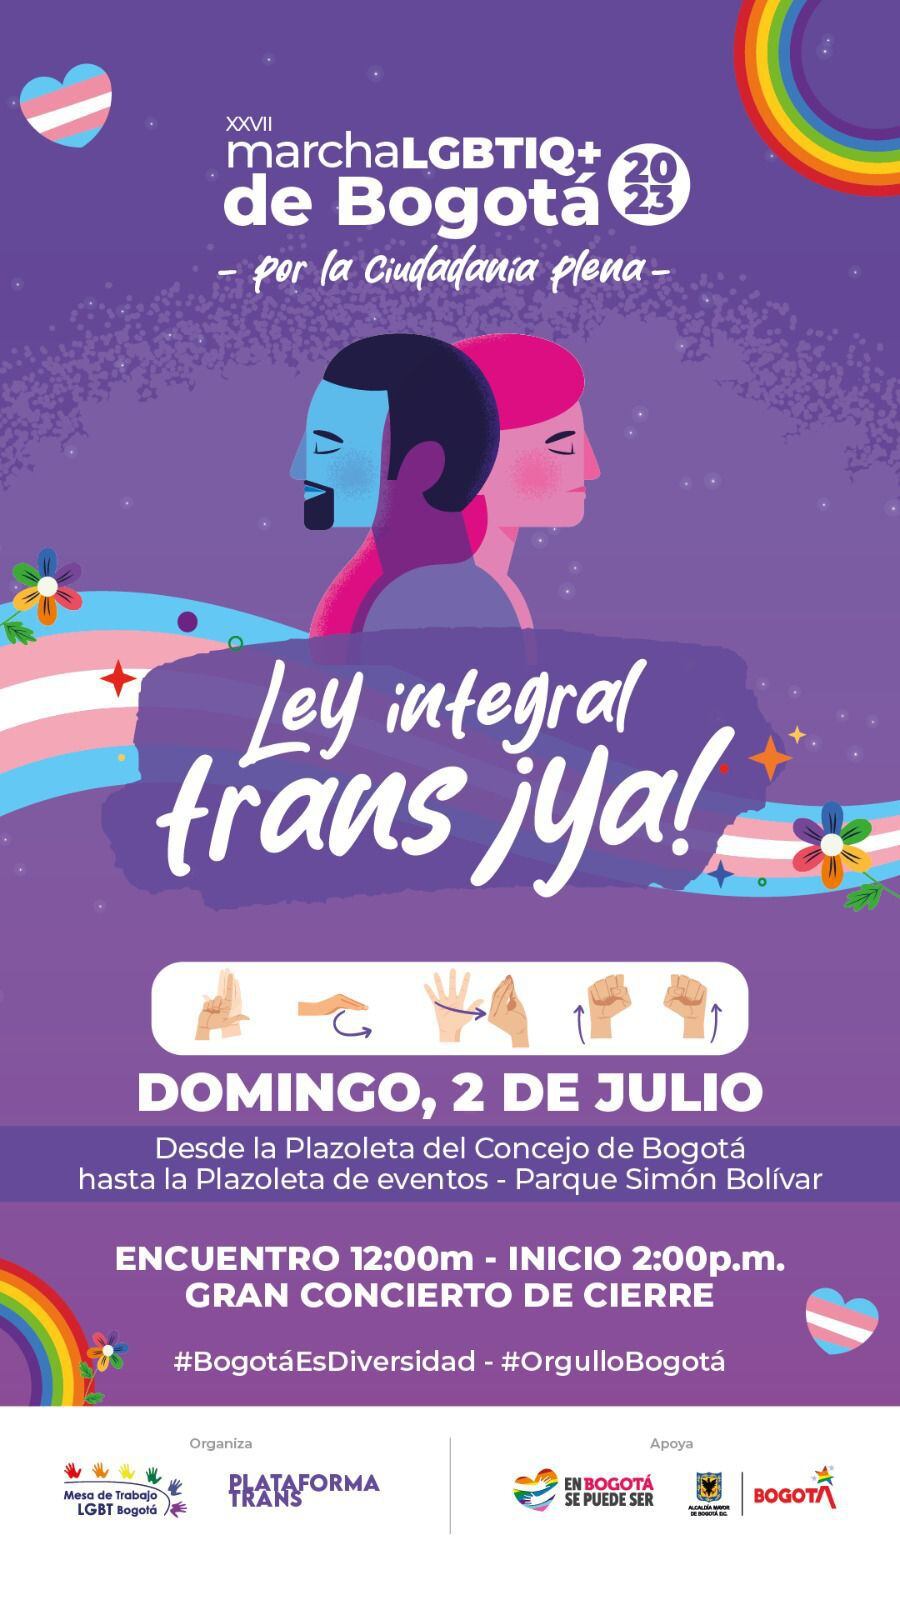 En Bogotá se realizarán tres manifestaciones: La Marcha del Sur (25 de junio), la Marcha Distrital (2 de julio) y La Marcha Trans (7 de julio). Bogotá se puede ser.